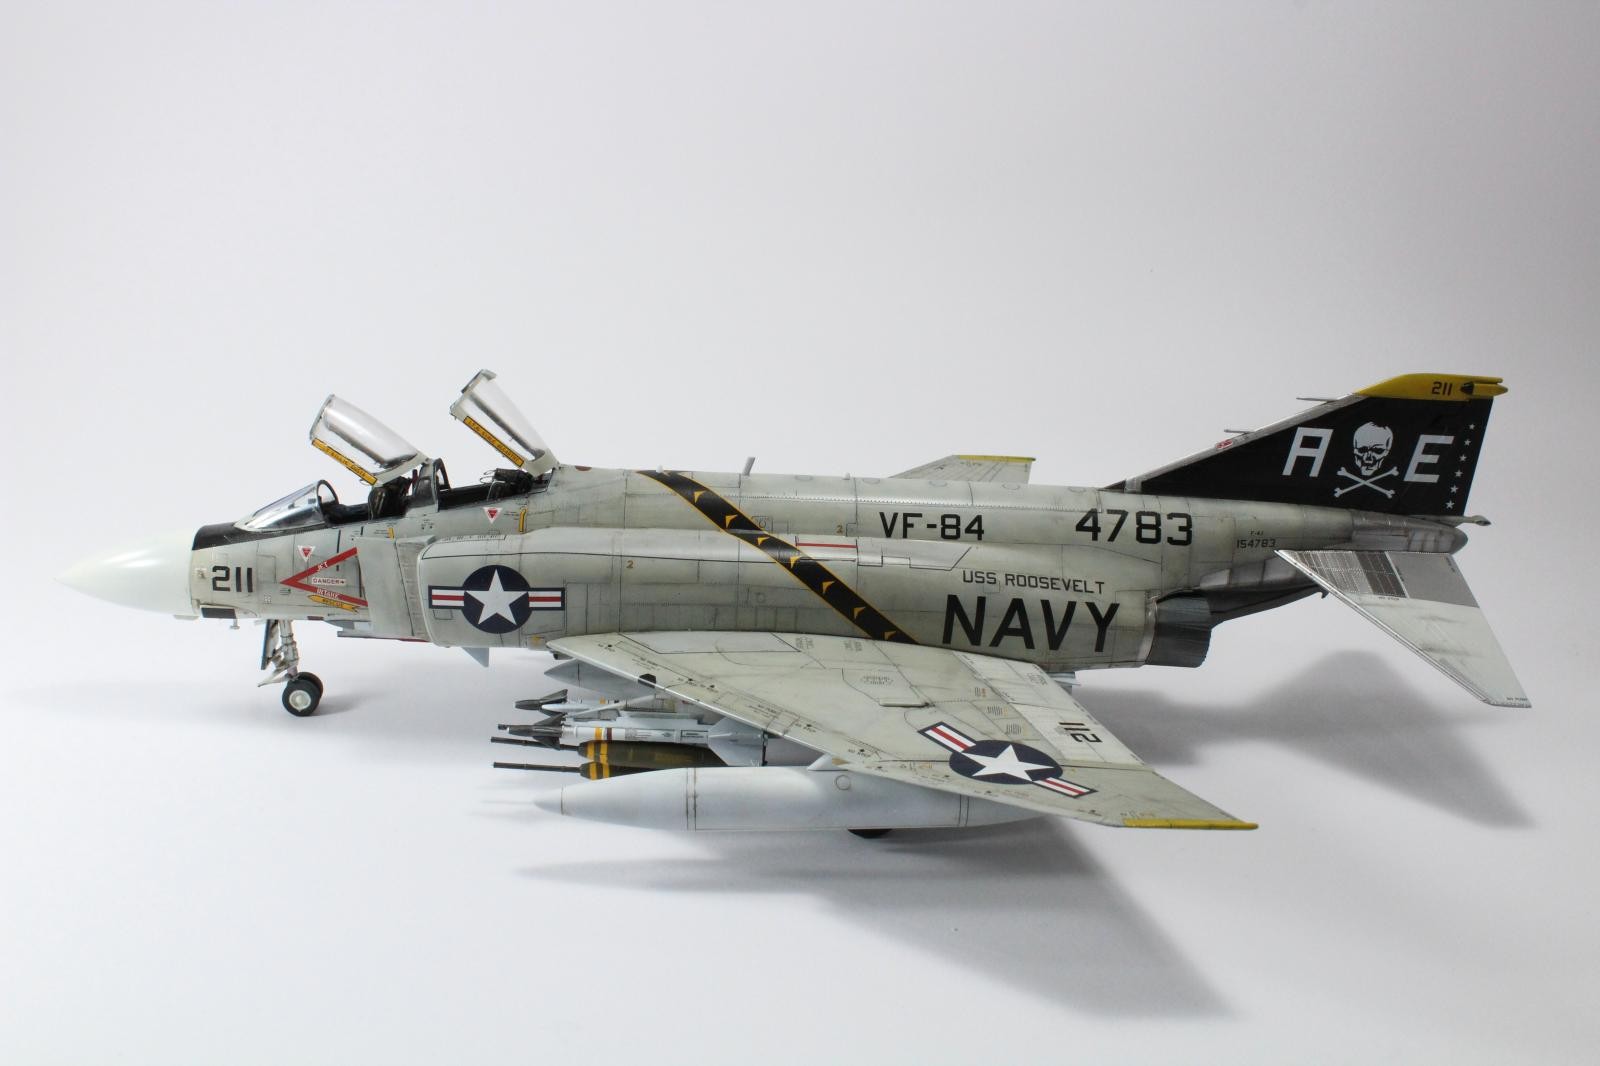 ROKAF F-4D AIR FORCE Airplain Academy 12300 Hobby Model Kit Toy 1/48 